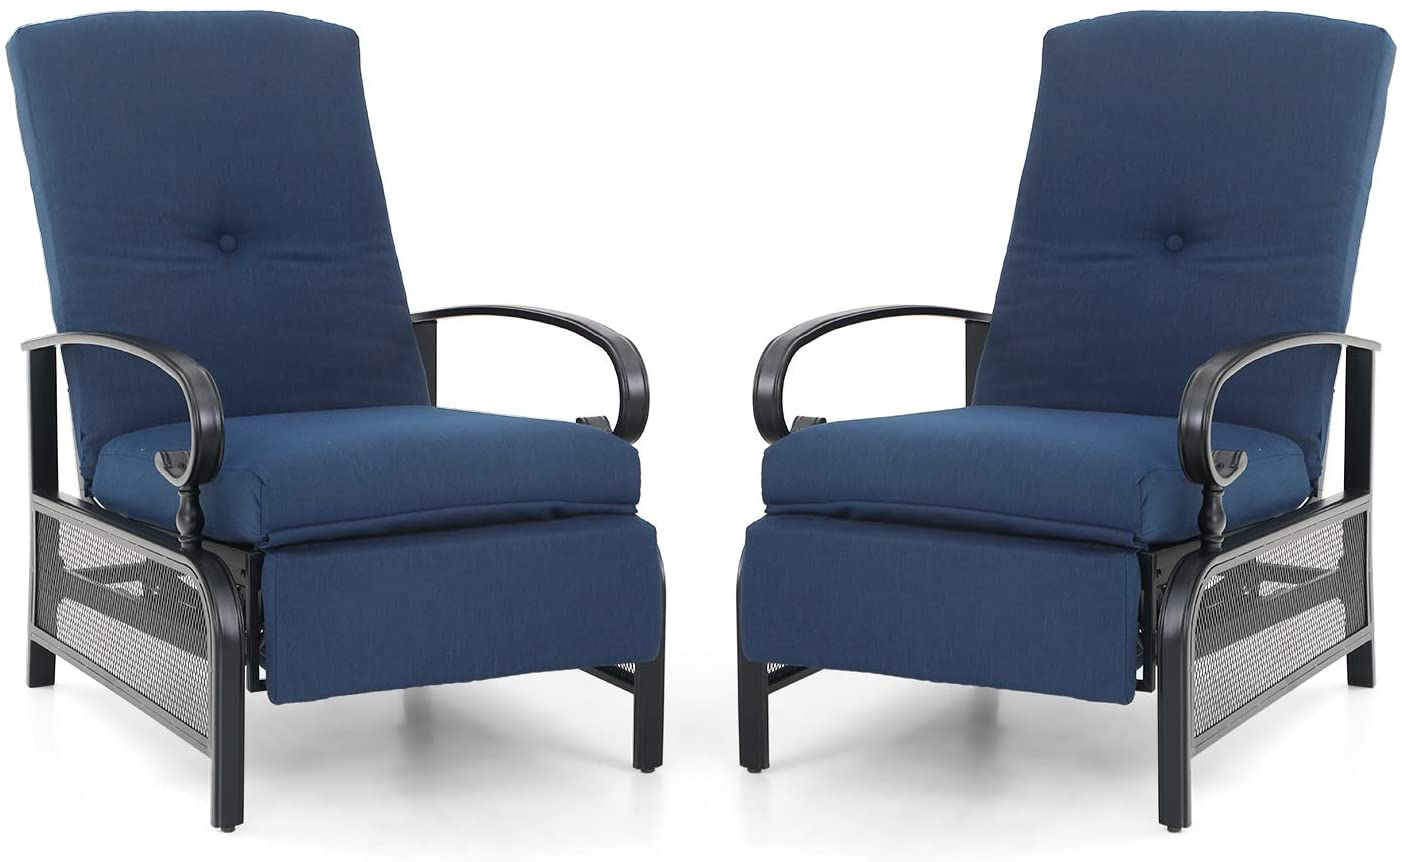 Sophia & William Adjustable Patio Recliner Chair Set